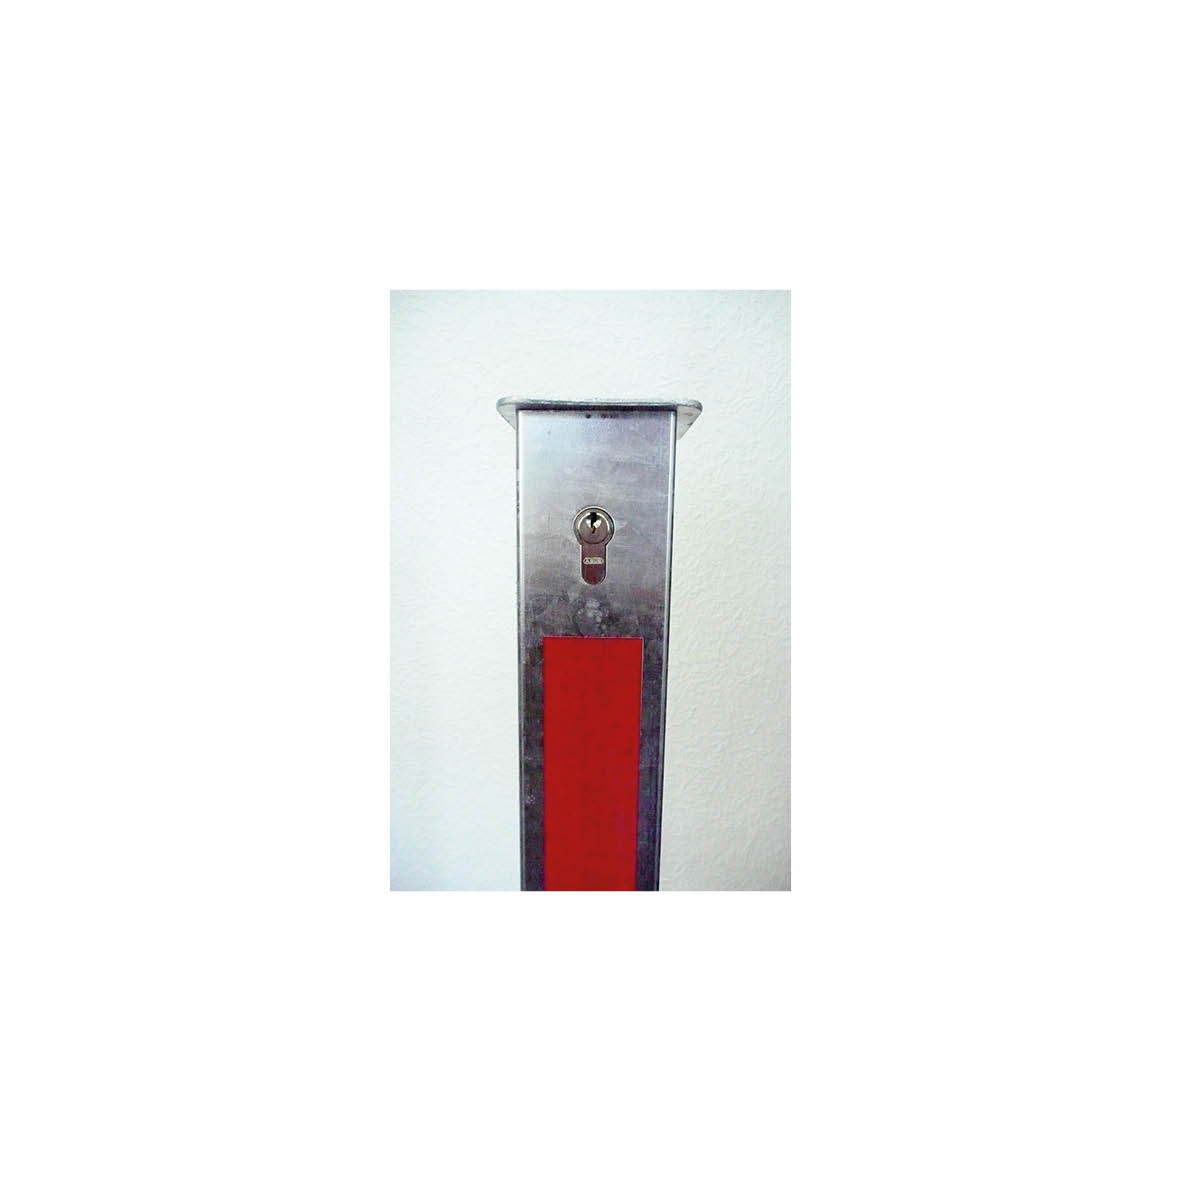 Absperrpfosten 70/70 mm versenkbar, mit Sicherheitsschliessung und Bodenrohr, verzinkt und weiss beschichtet mit roten reflektierenden Streifen, H=900 mm über Flur